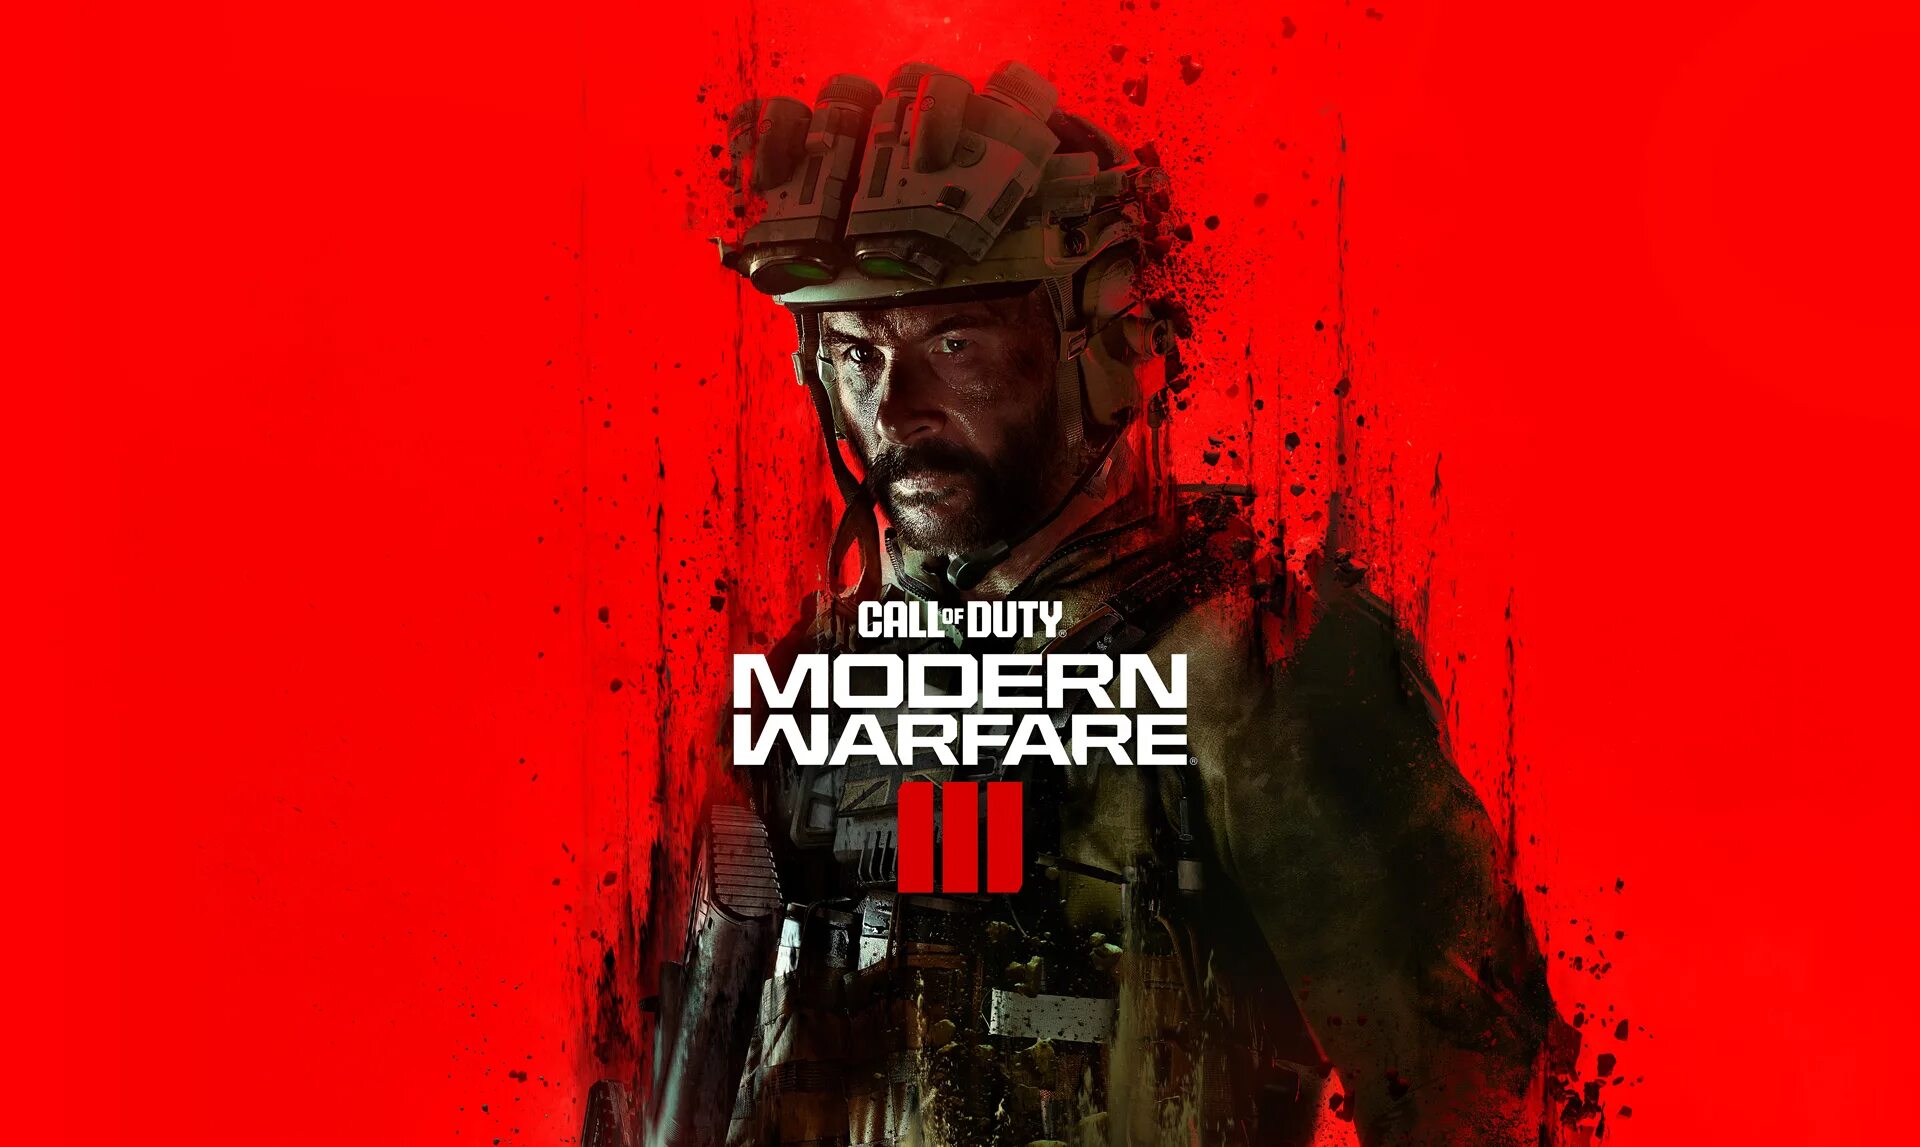 Call of Duty mw3 2023. Call of Duty: Modern Warfare III (2023). Call of Duty Modern Warfare обои. КОЛДА mw3. Купить кал оф дьюти модерн варфаер 3